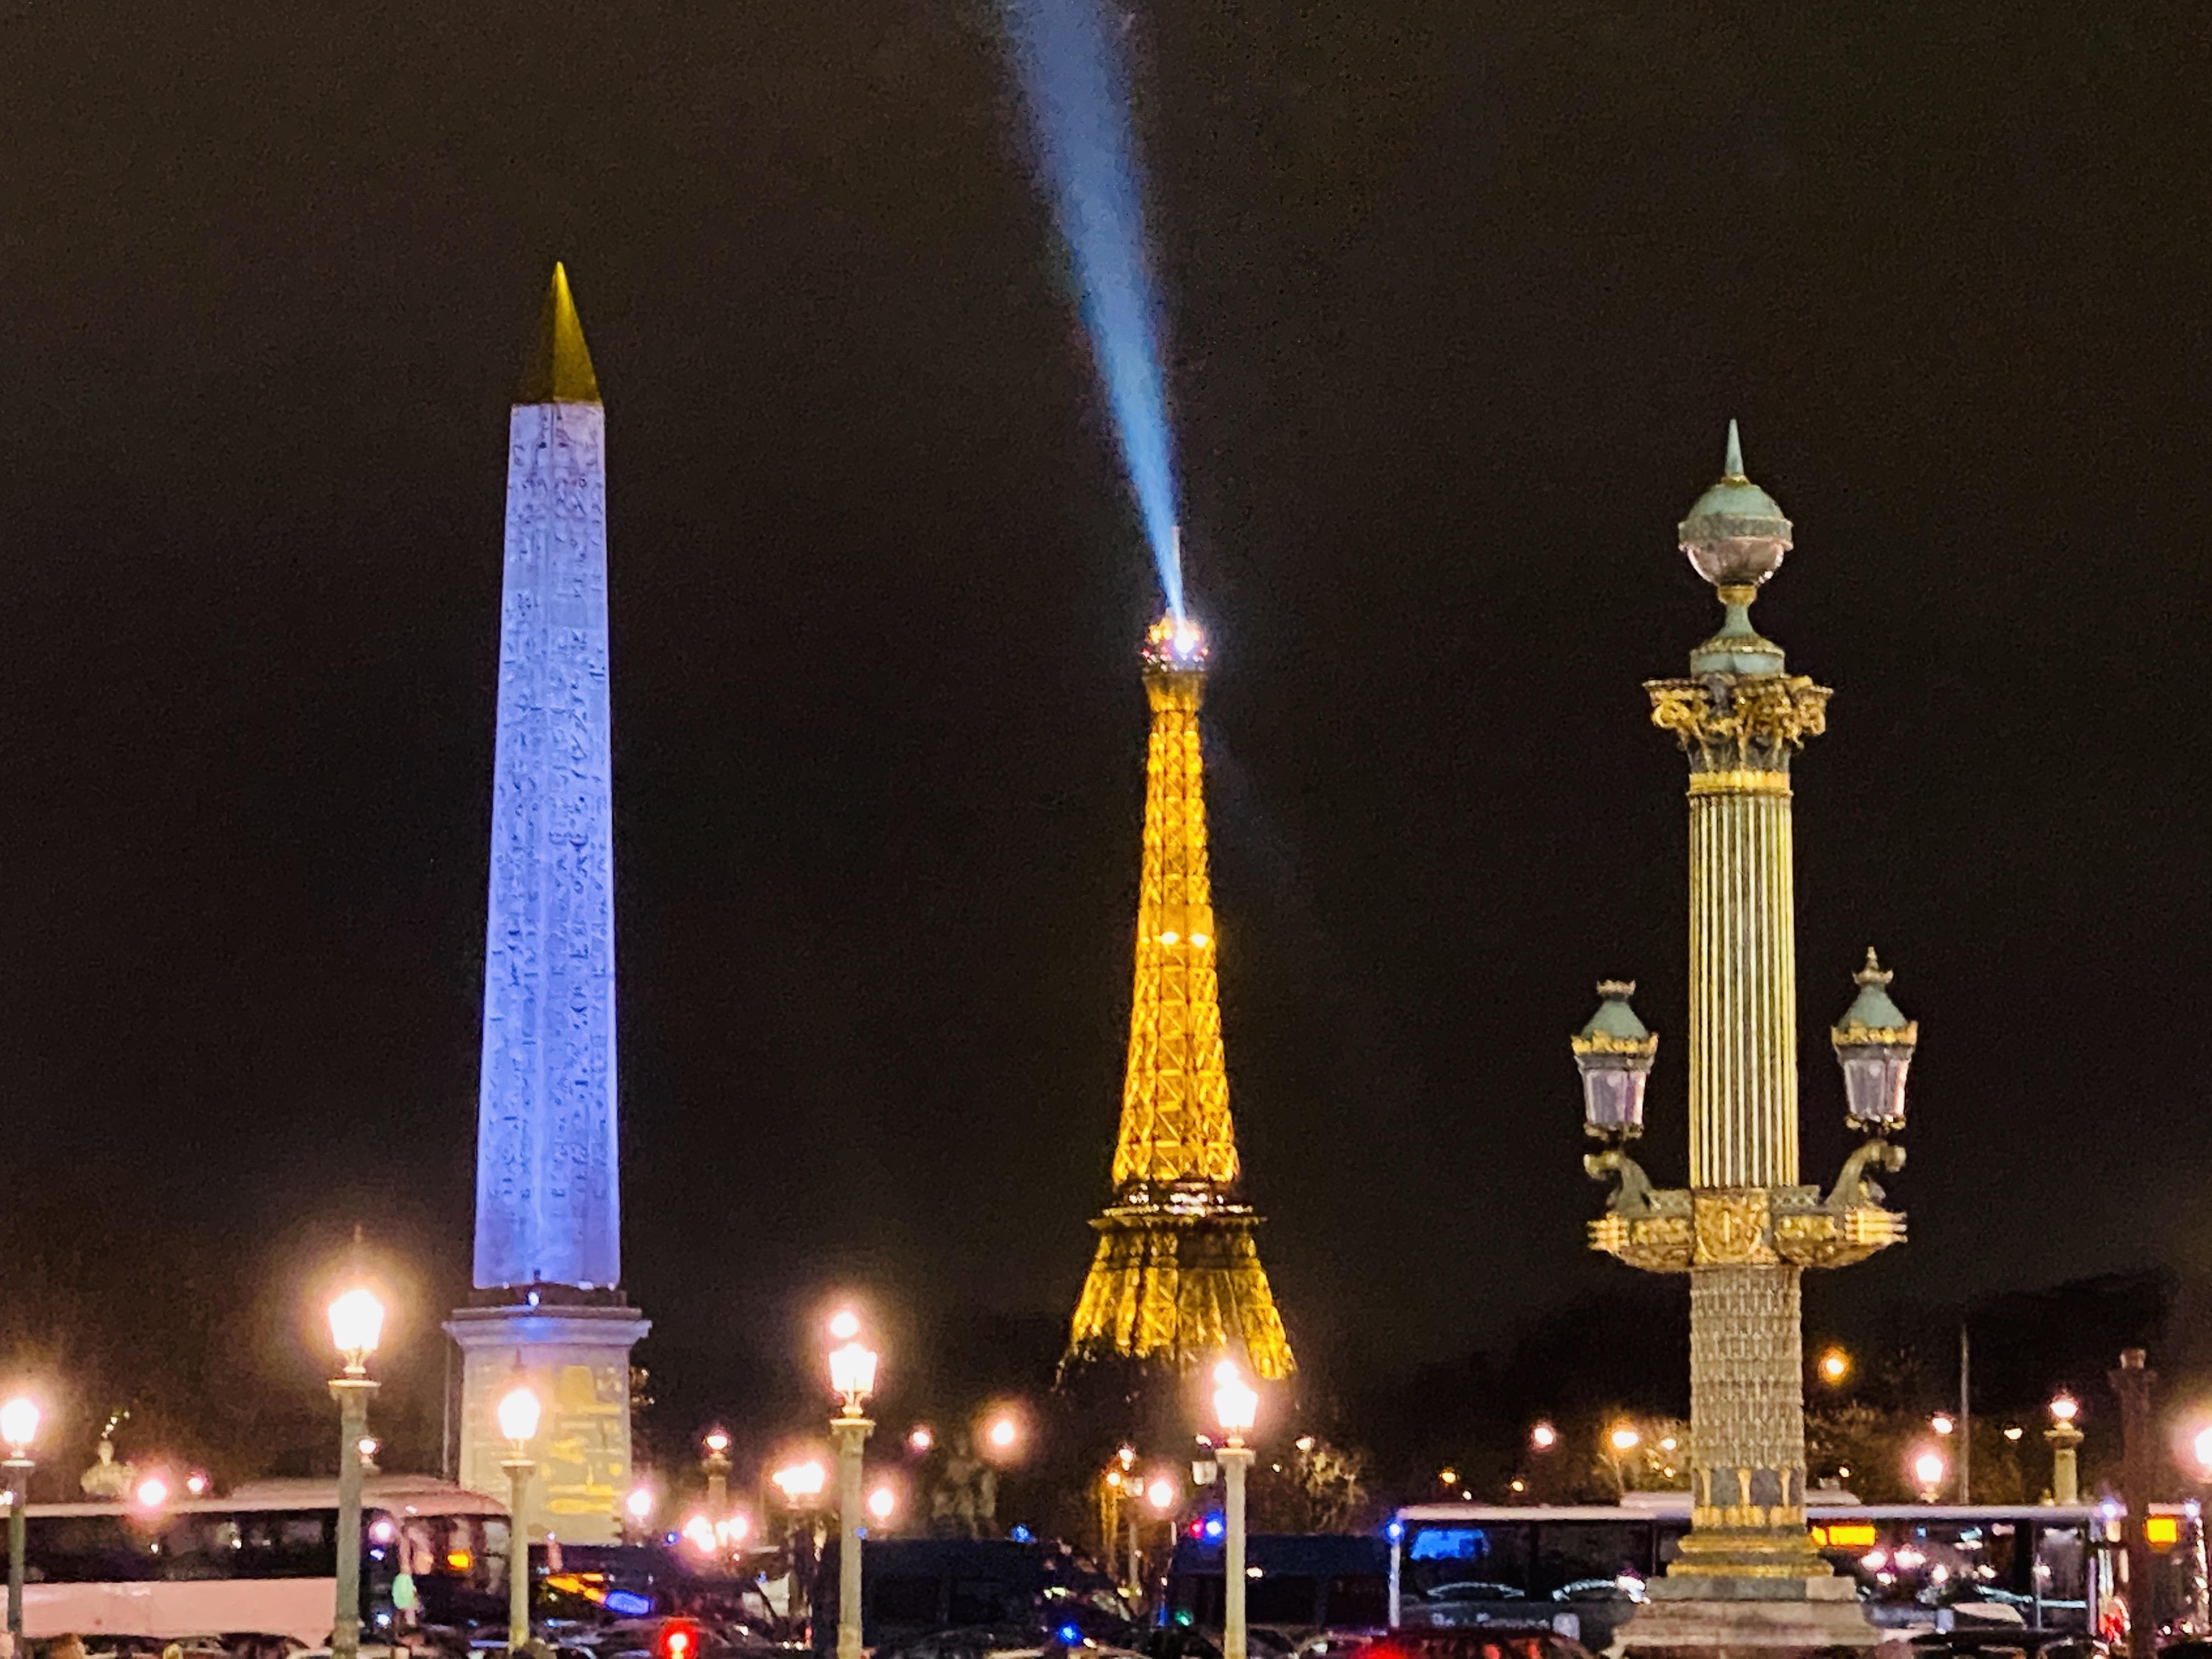 Three "towers" in Paris 